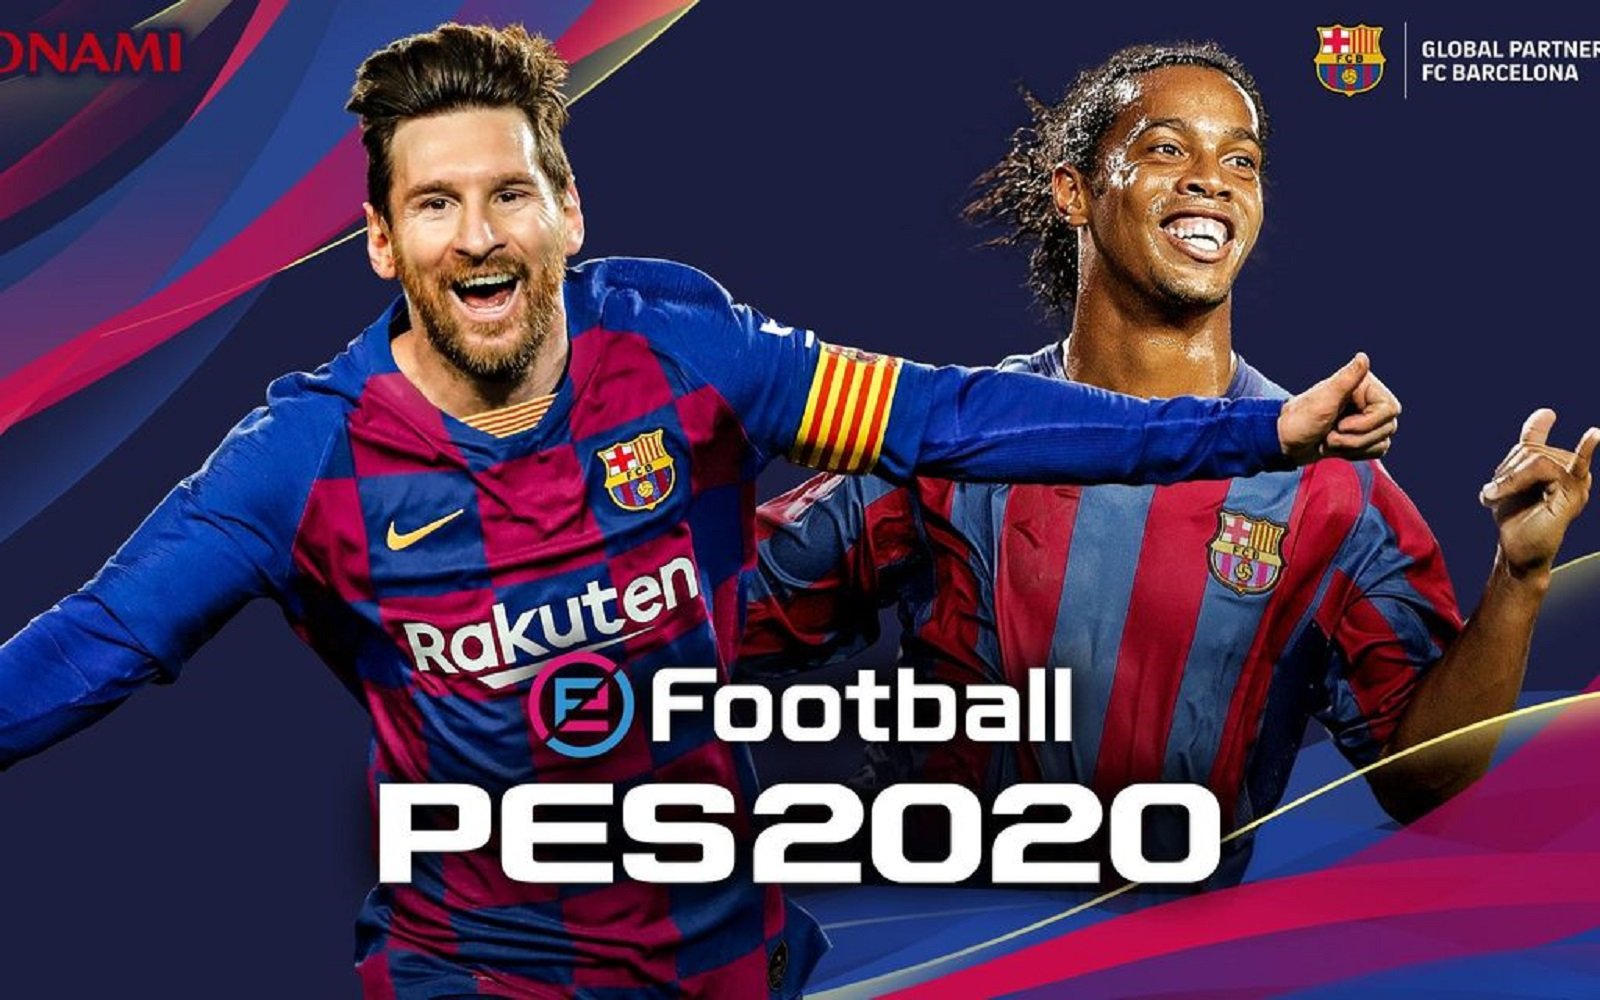 El PES 2020 es presenta amb Messi de protagonista